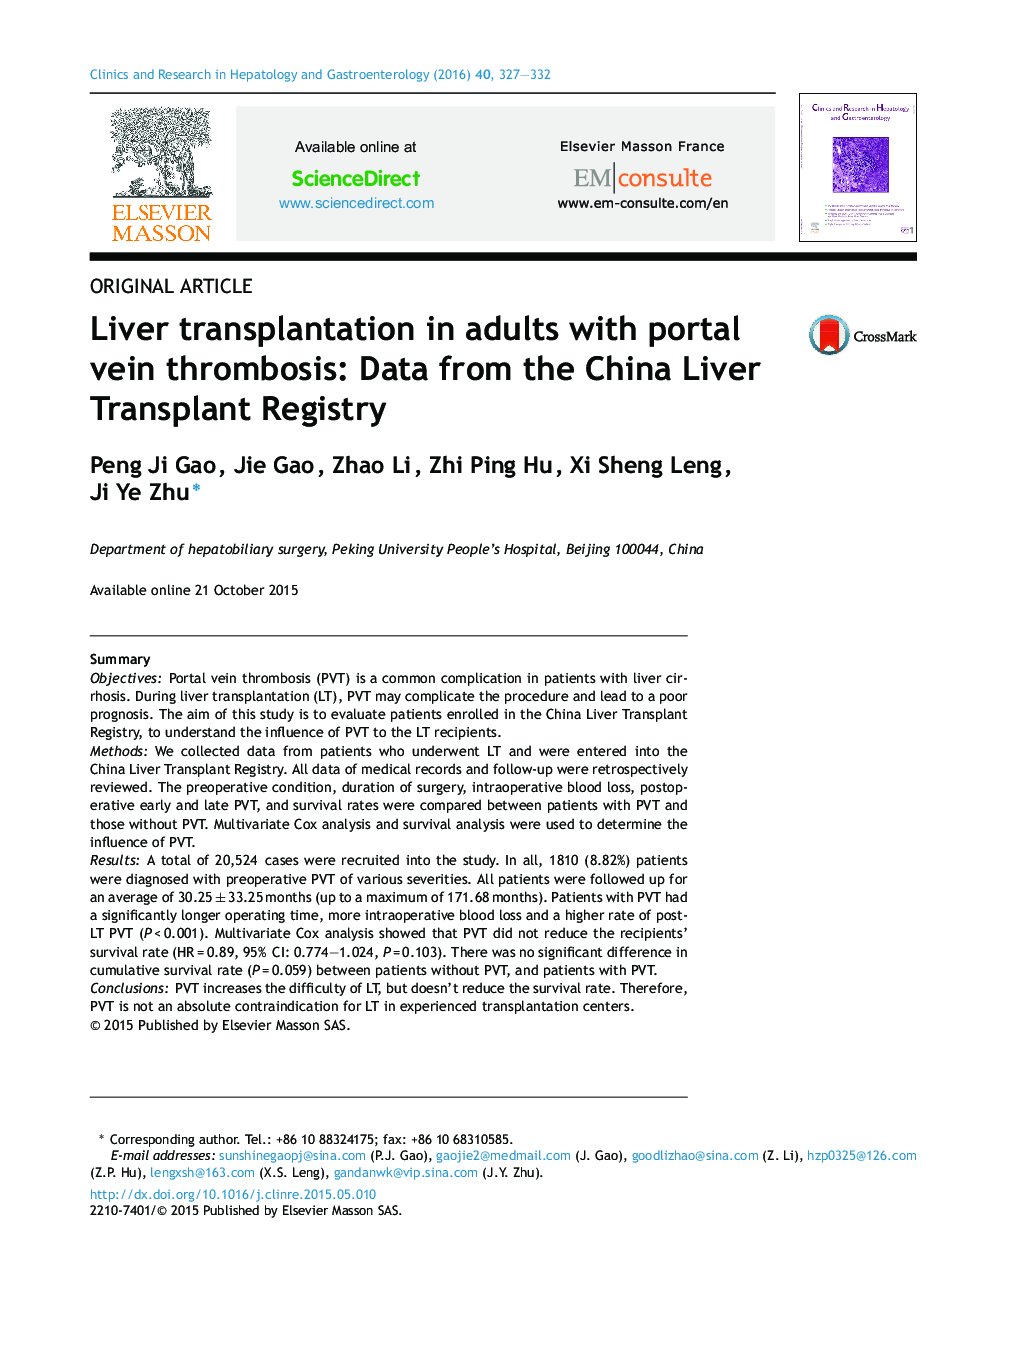 پیوند کبدی در بزرگسالان مبتلا به ترومبوز وریدی پورتال: اطلاعات از ثبت پیوند در چین